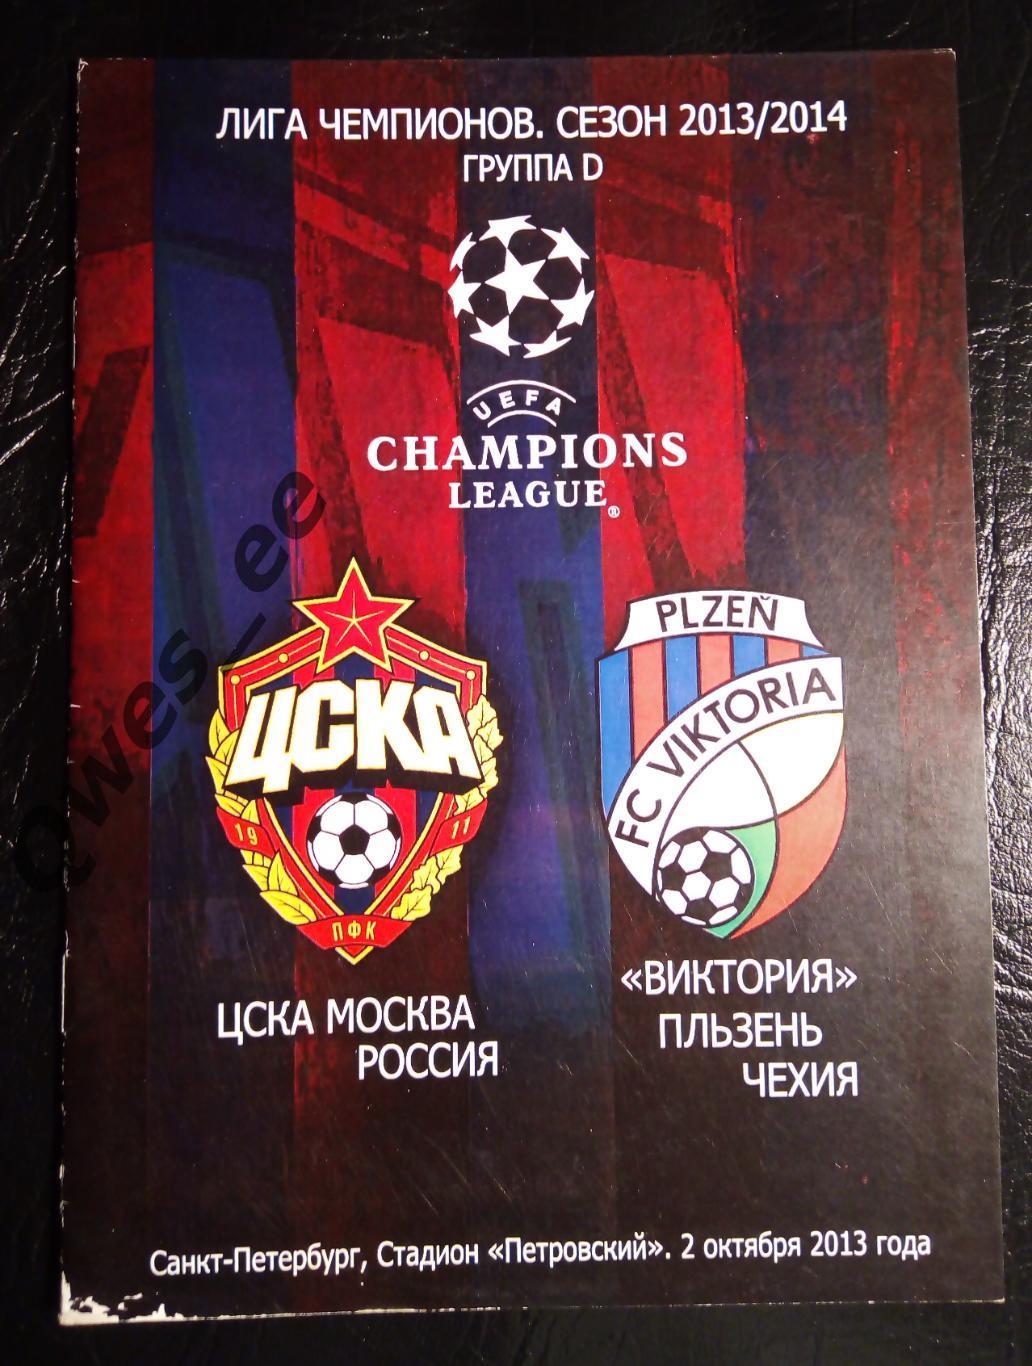 ЦСКА Москва - Виктория Чехия 2 октября 2013 Лига Чемпионов